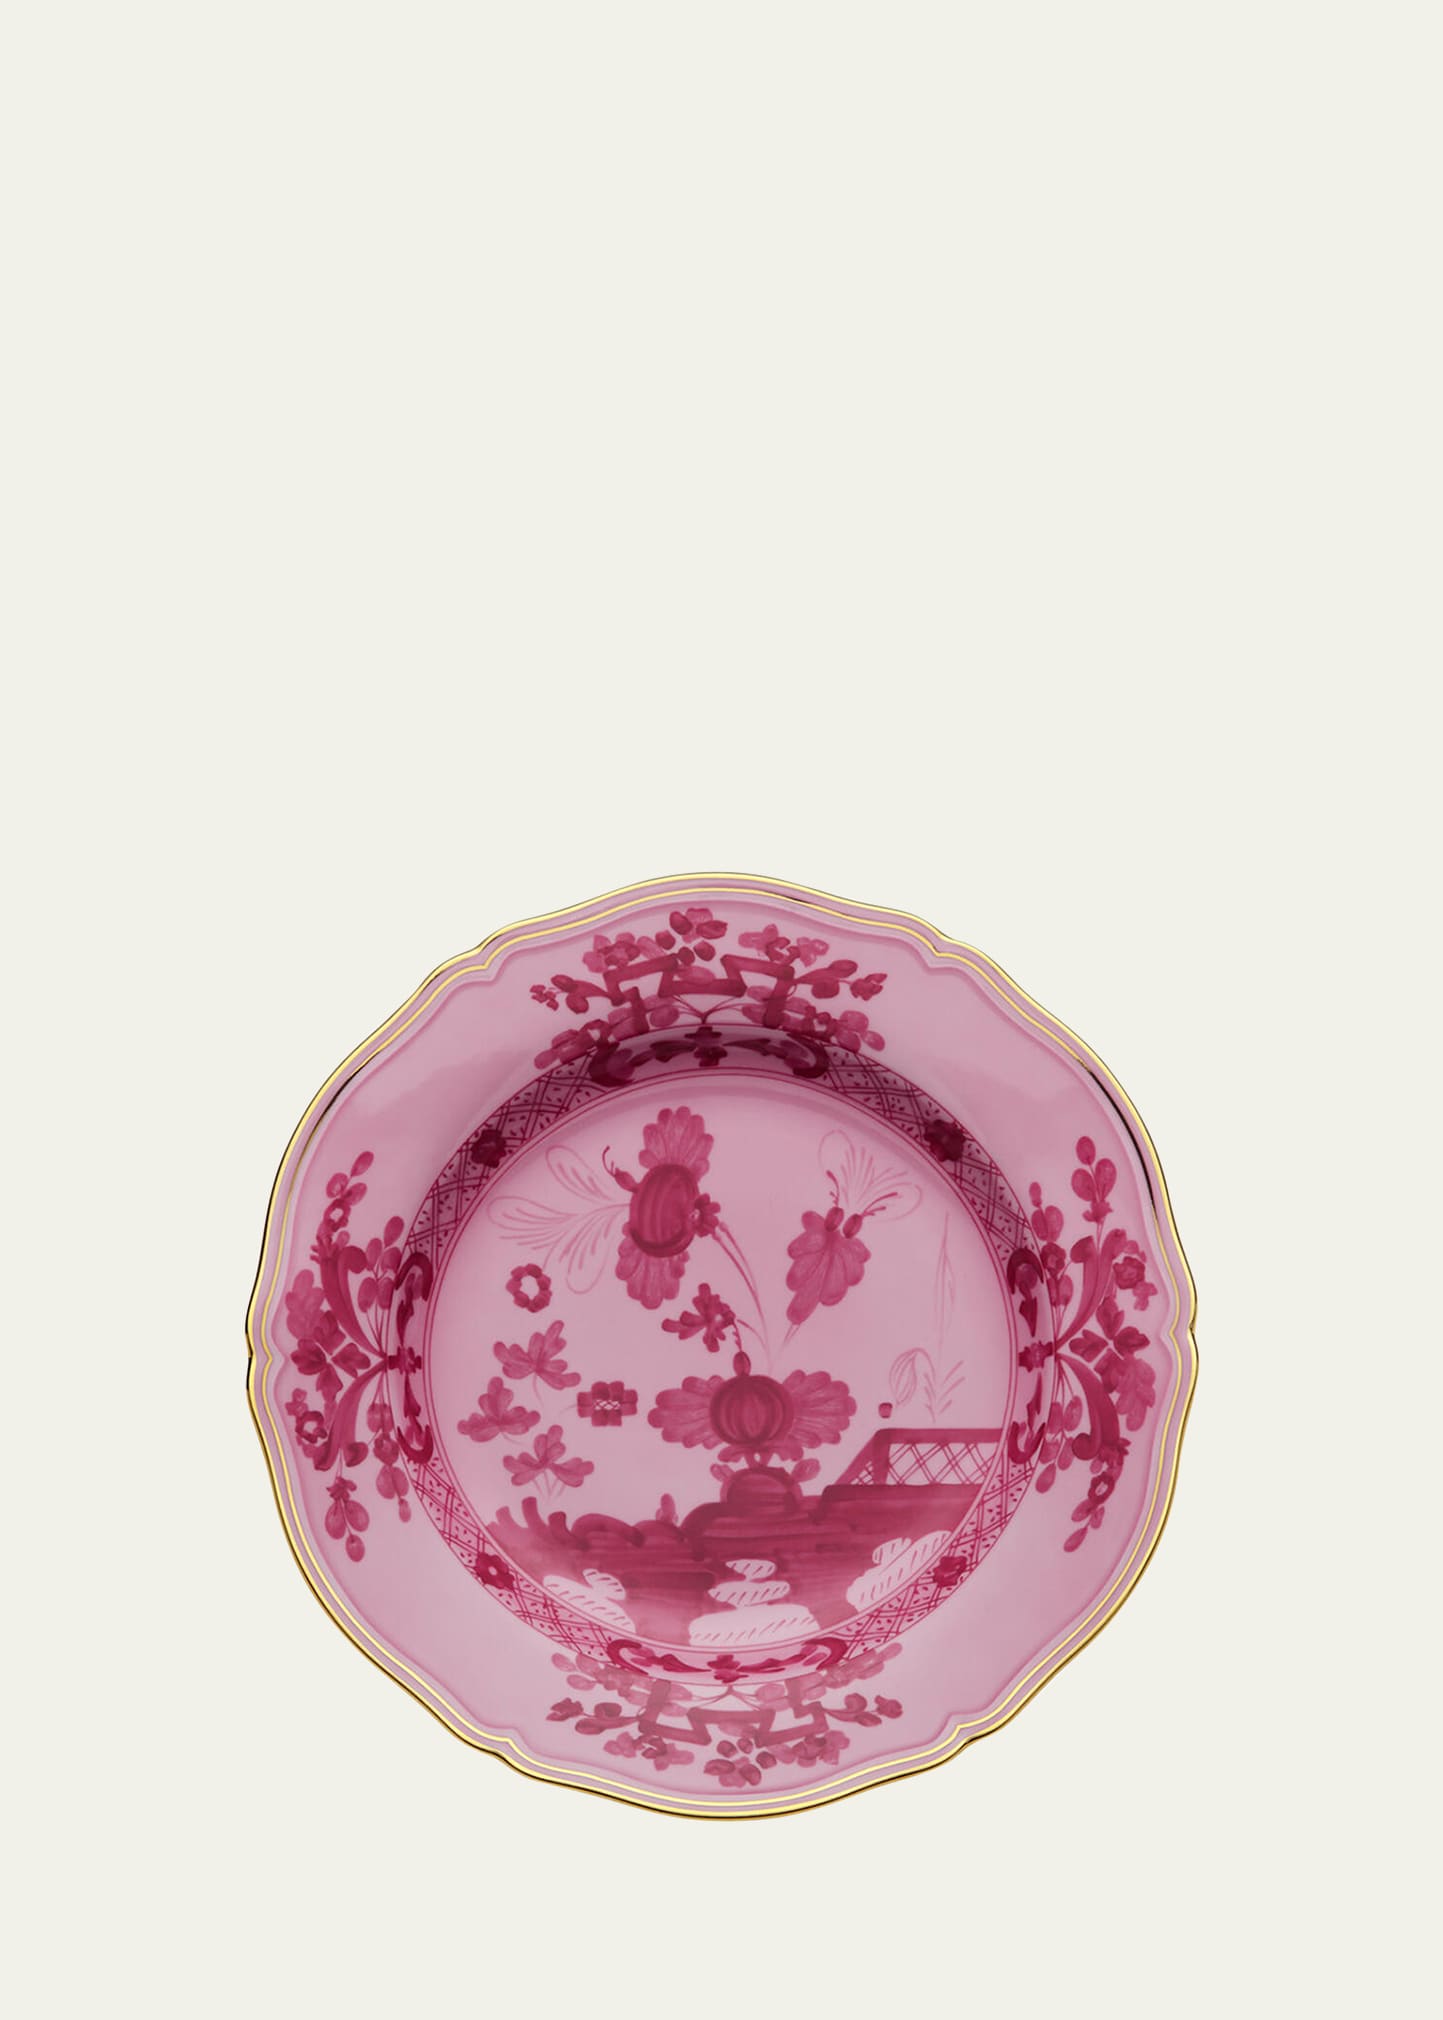 GINORI 1735 Oriente Italiano Charger Plate